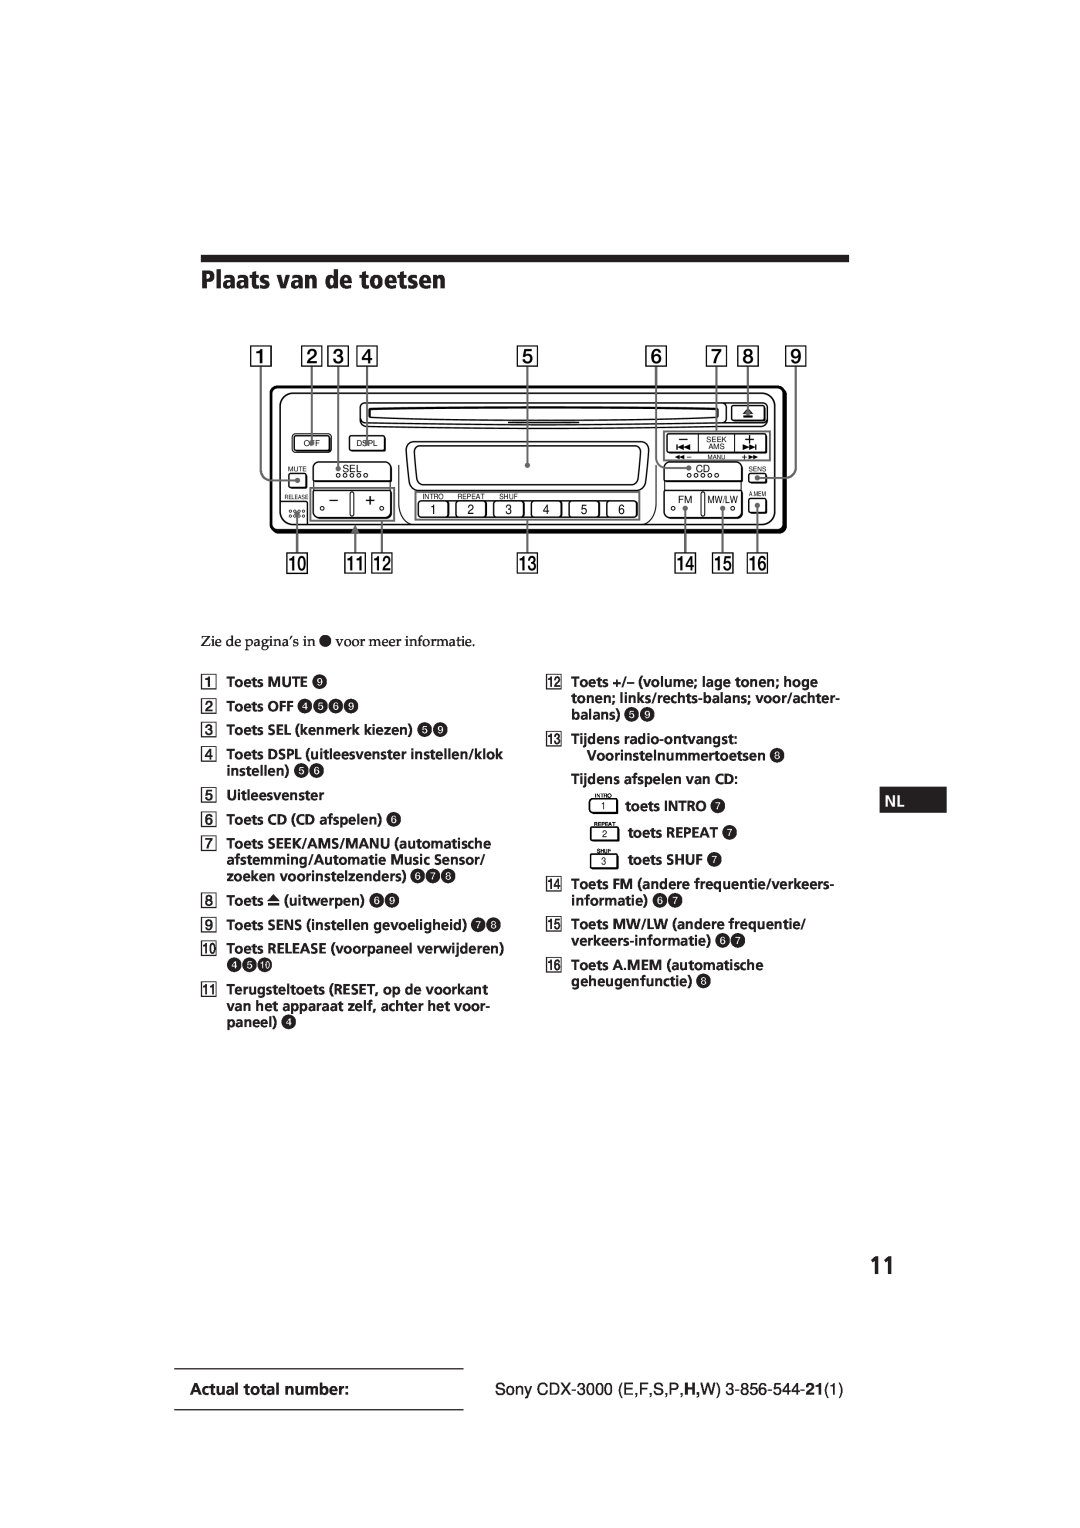 Sony manual Plaats van de toetsen, Actual total number, Sony CDX-3000E,F,S,P,H,W 